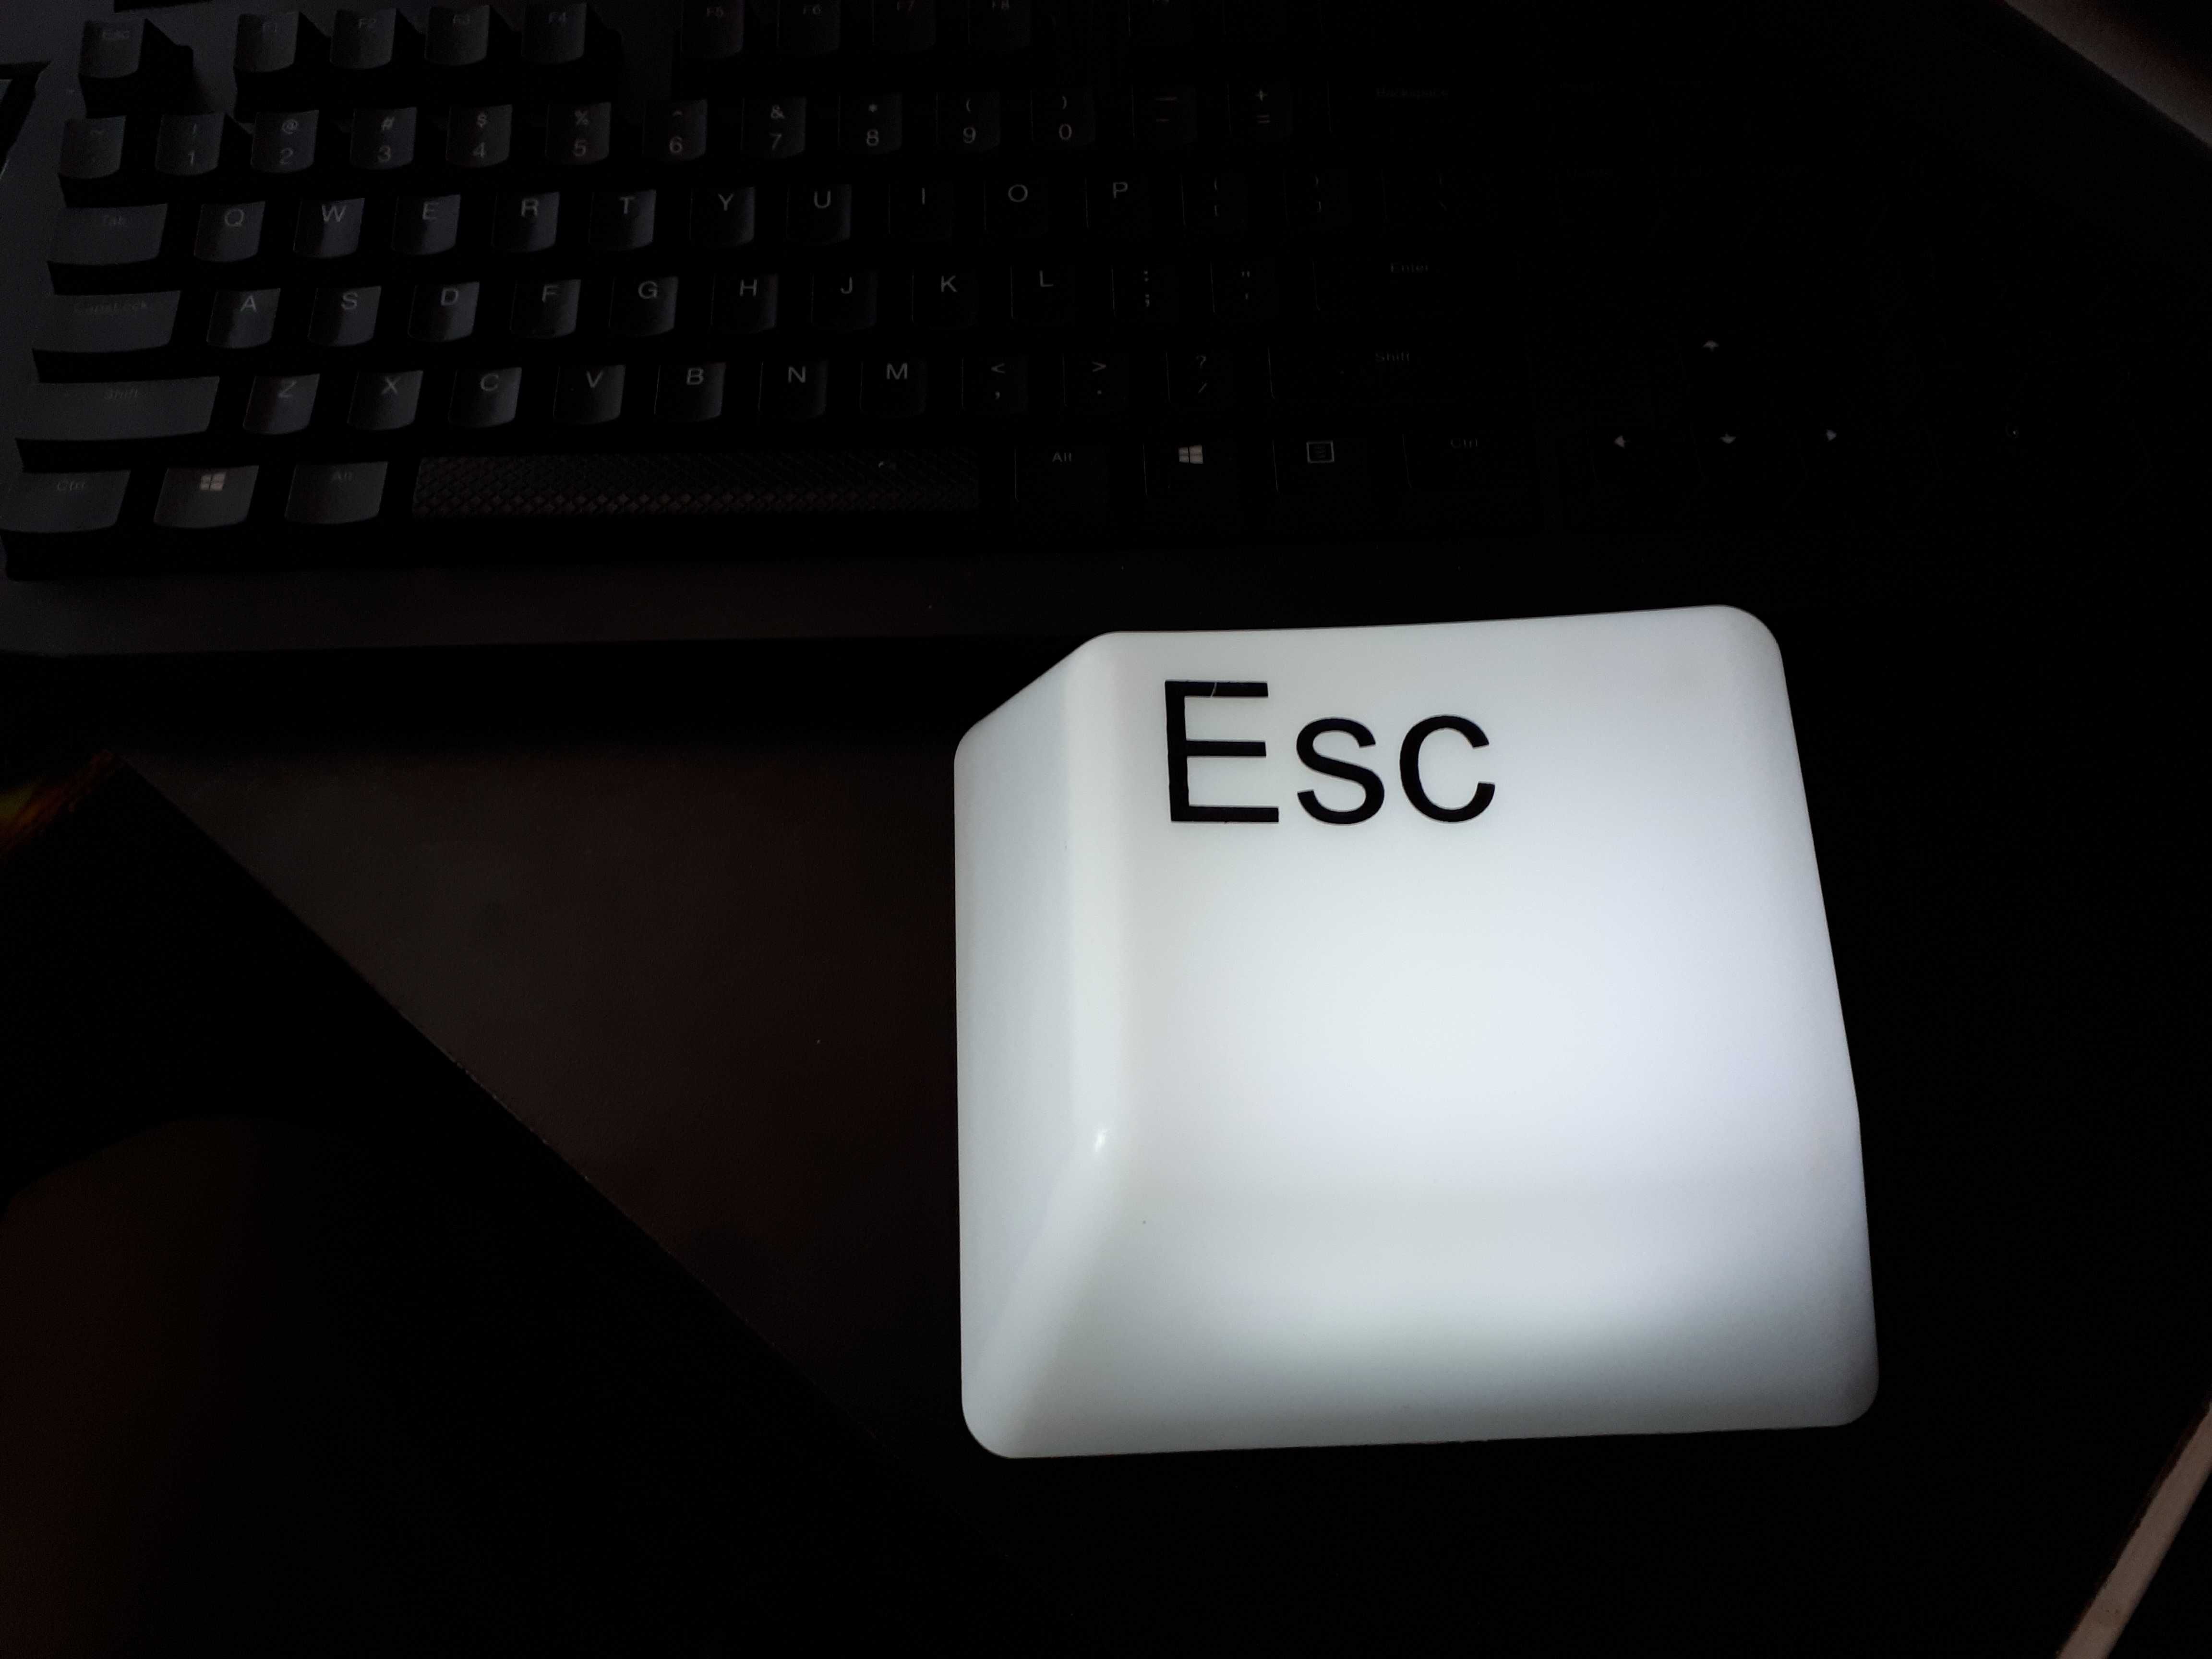 Lampka przycisk klawiatury Esc  swietny gadżet